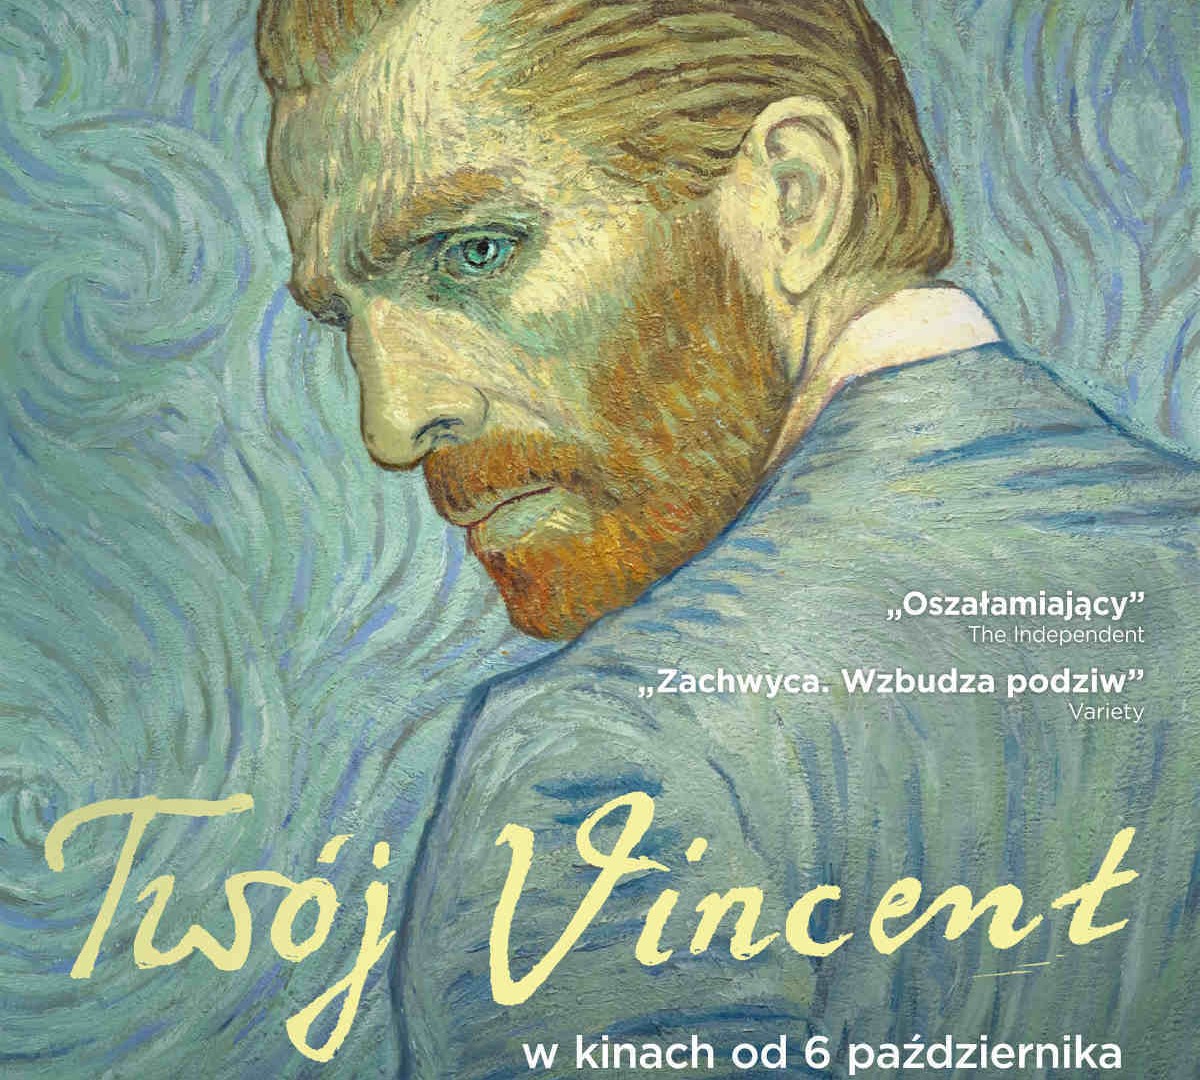 “Twój Vincent” with an Oscar nomination